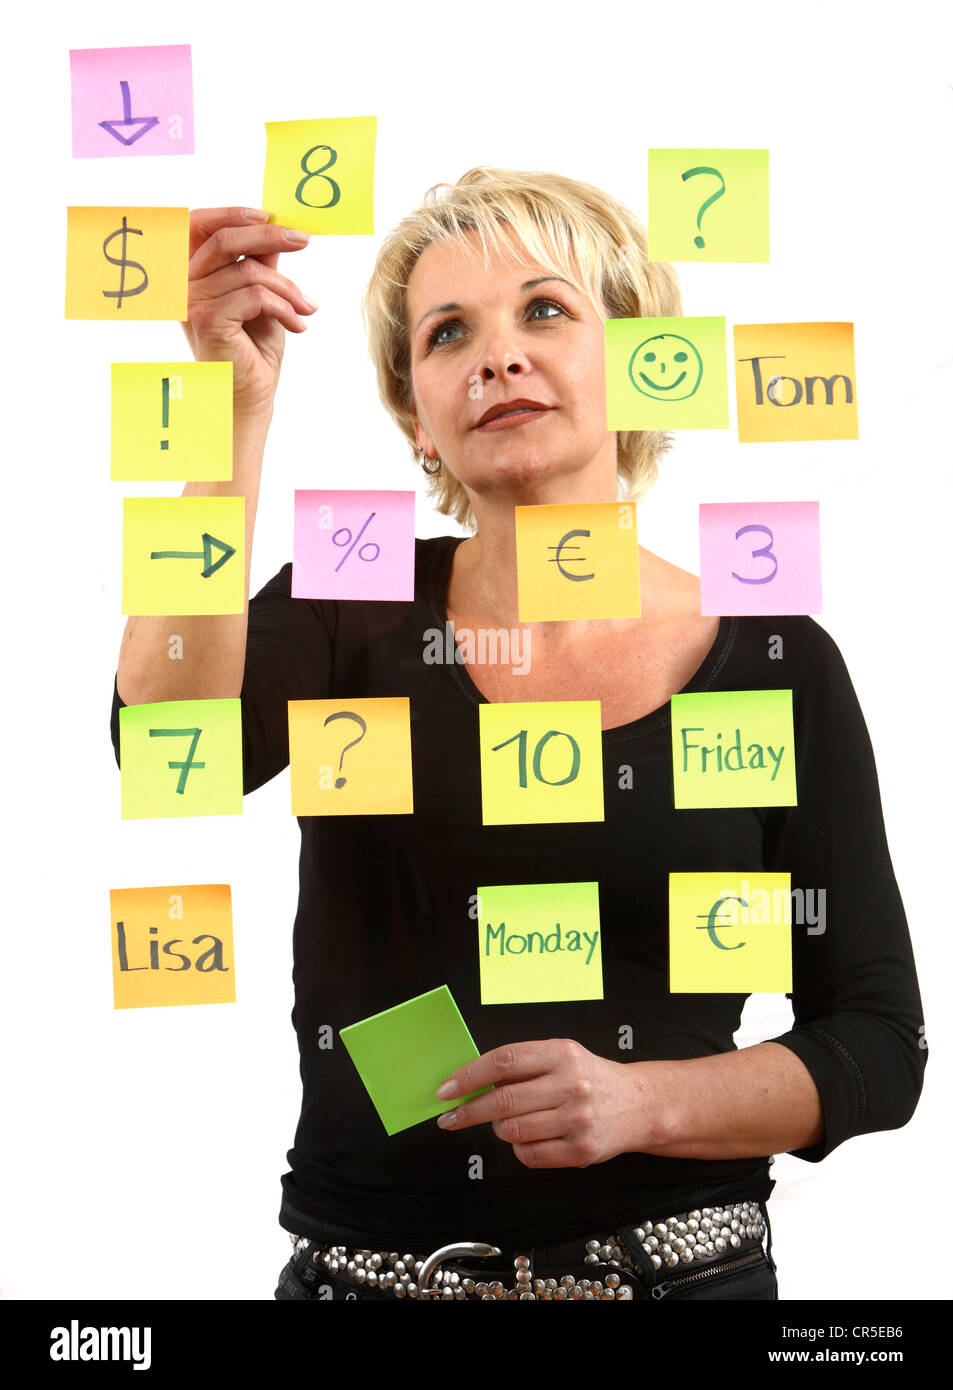 Frau klebt selbstklebenden Post-It, Notizen auf Papier, auf einer Glasscheibe geklebt. Verschiedenen Farben. Stockfoto